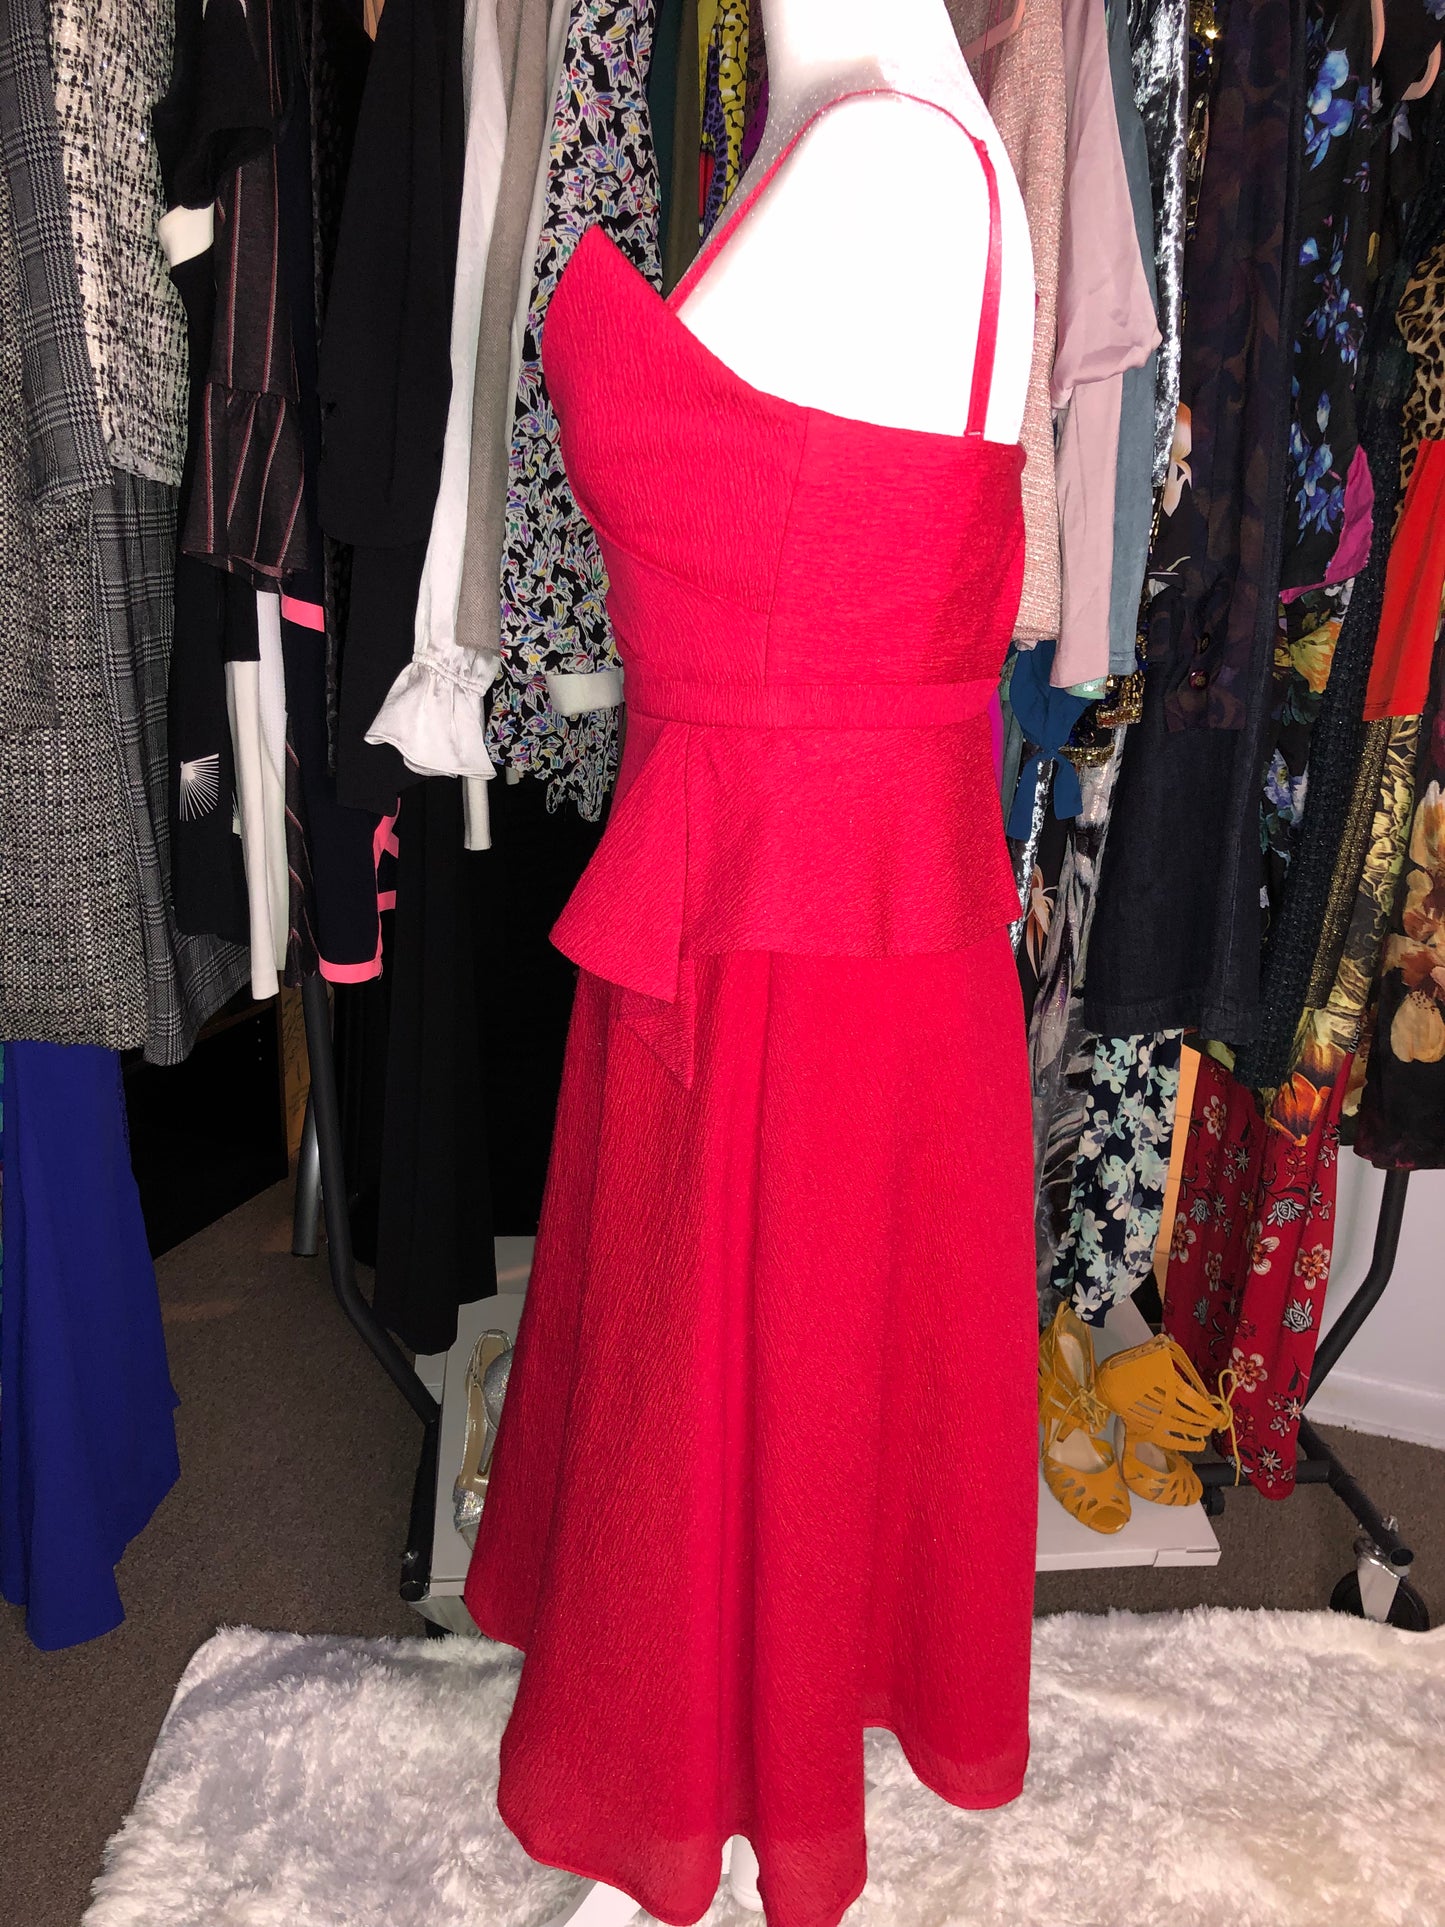 New BCBGMaxazria Red Dress